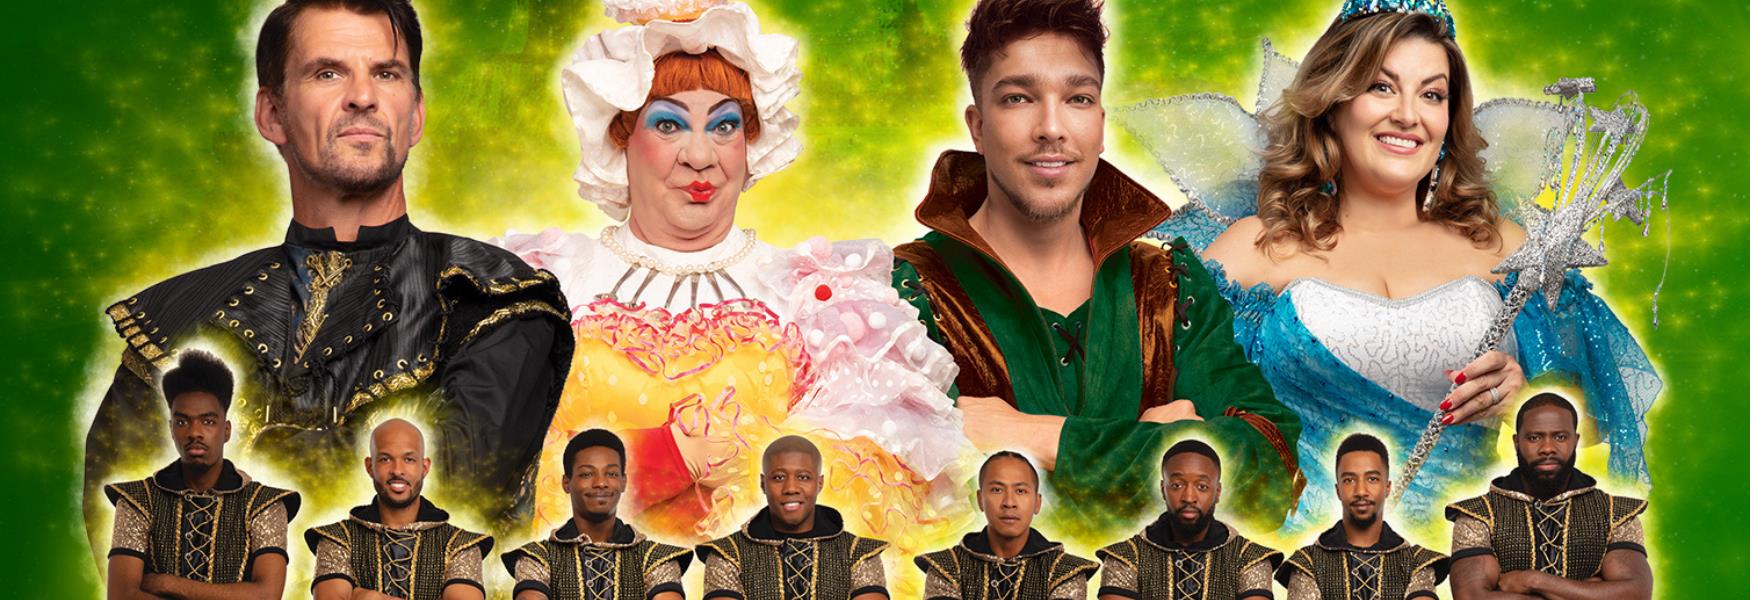 Robin Hood Pantomime Cast